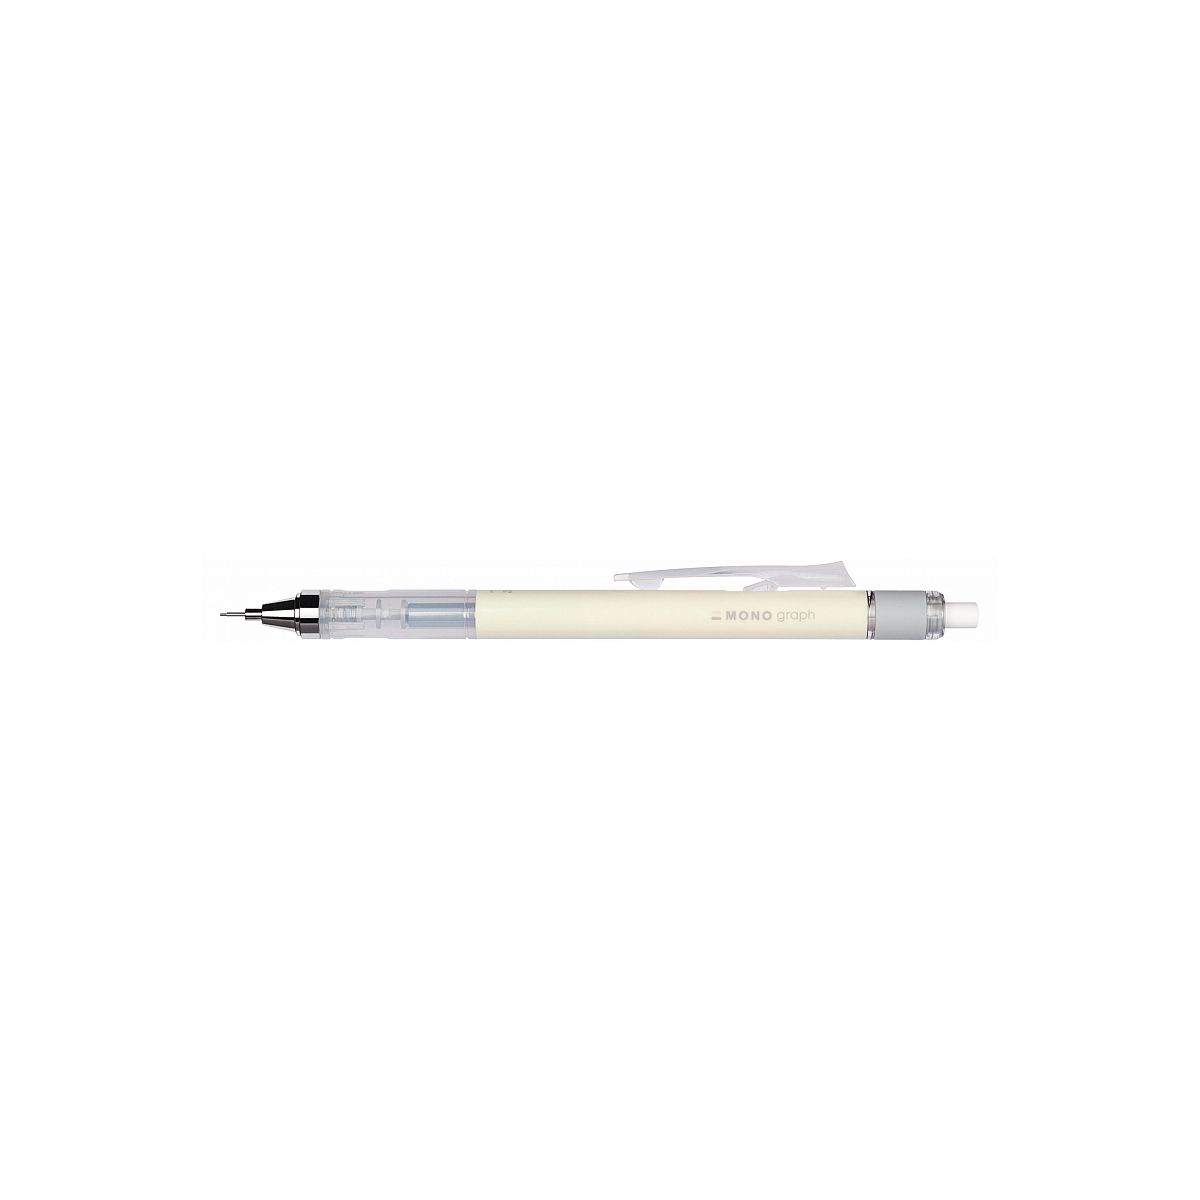 Ekskluzywny ołówek automatyczny Tombow (SH-MG54)